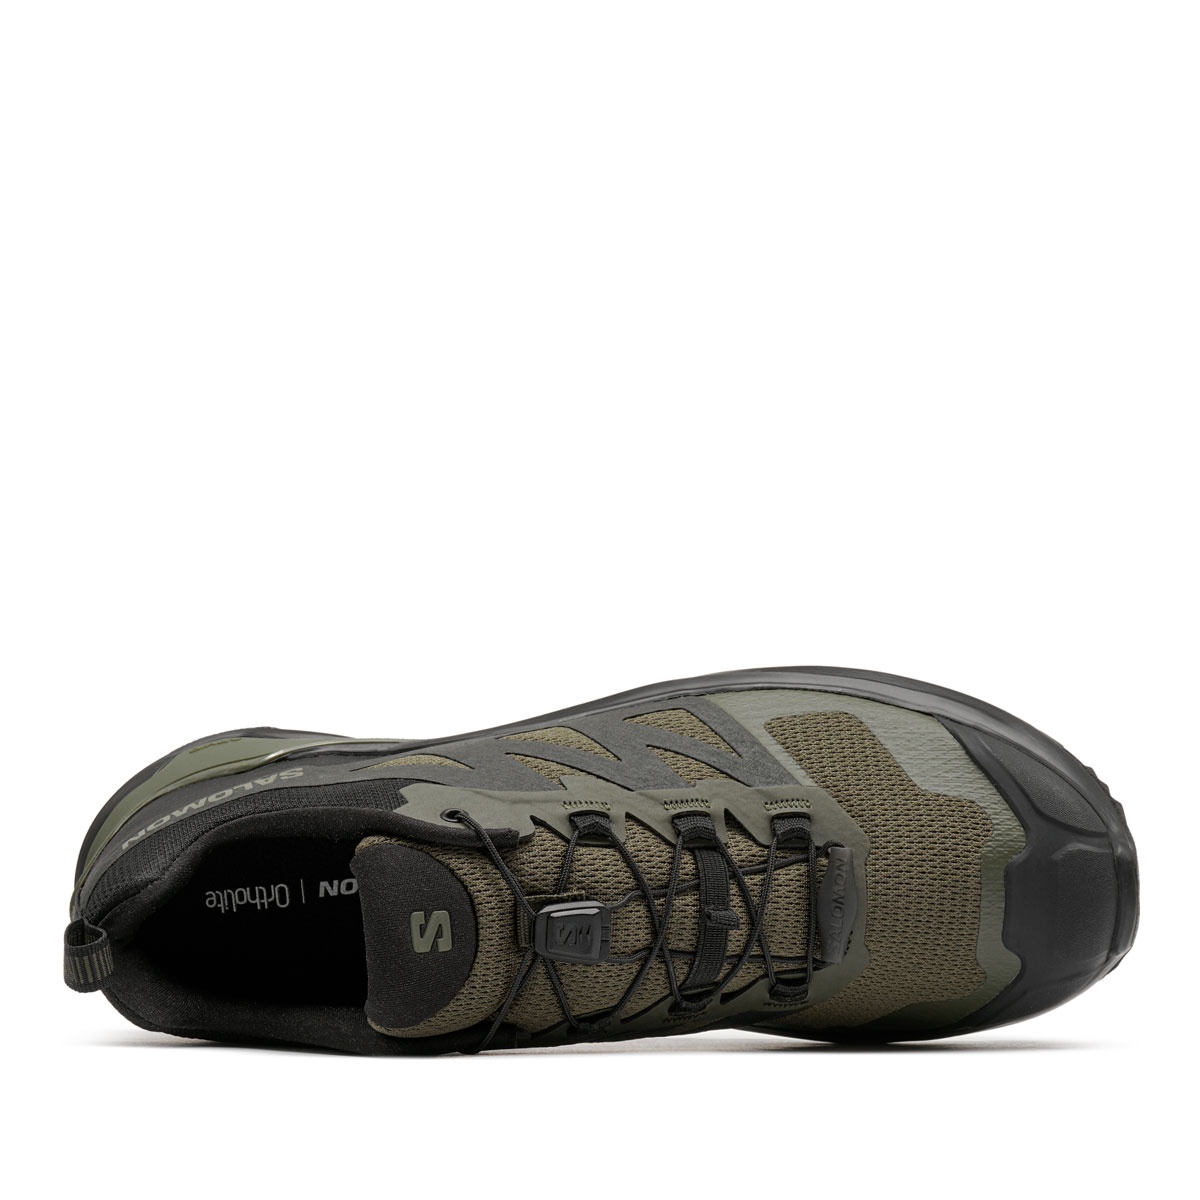 Salomon X-Adventure Мъжки спортни обувки 473860